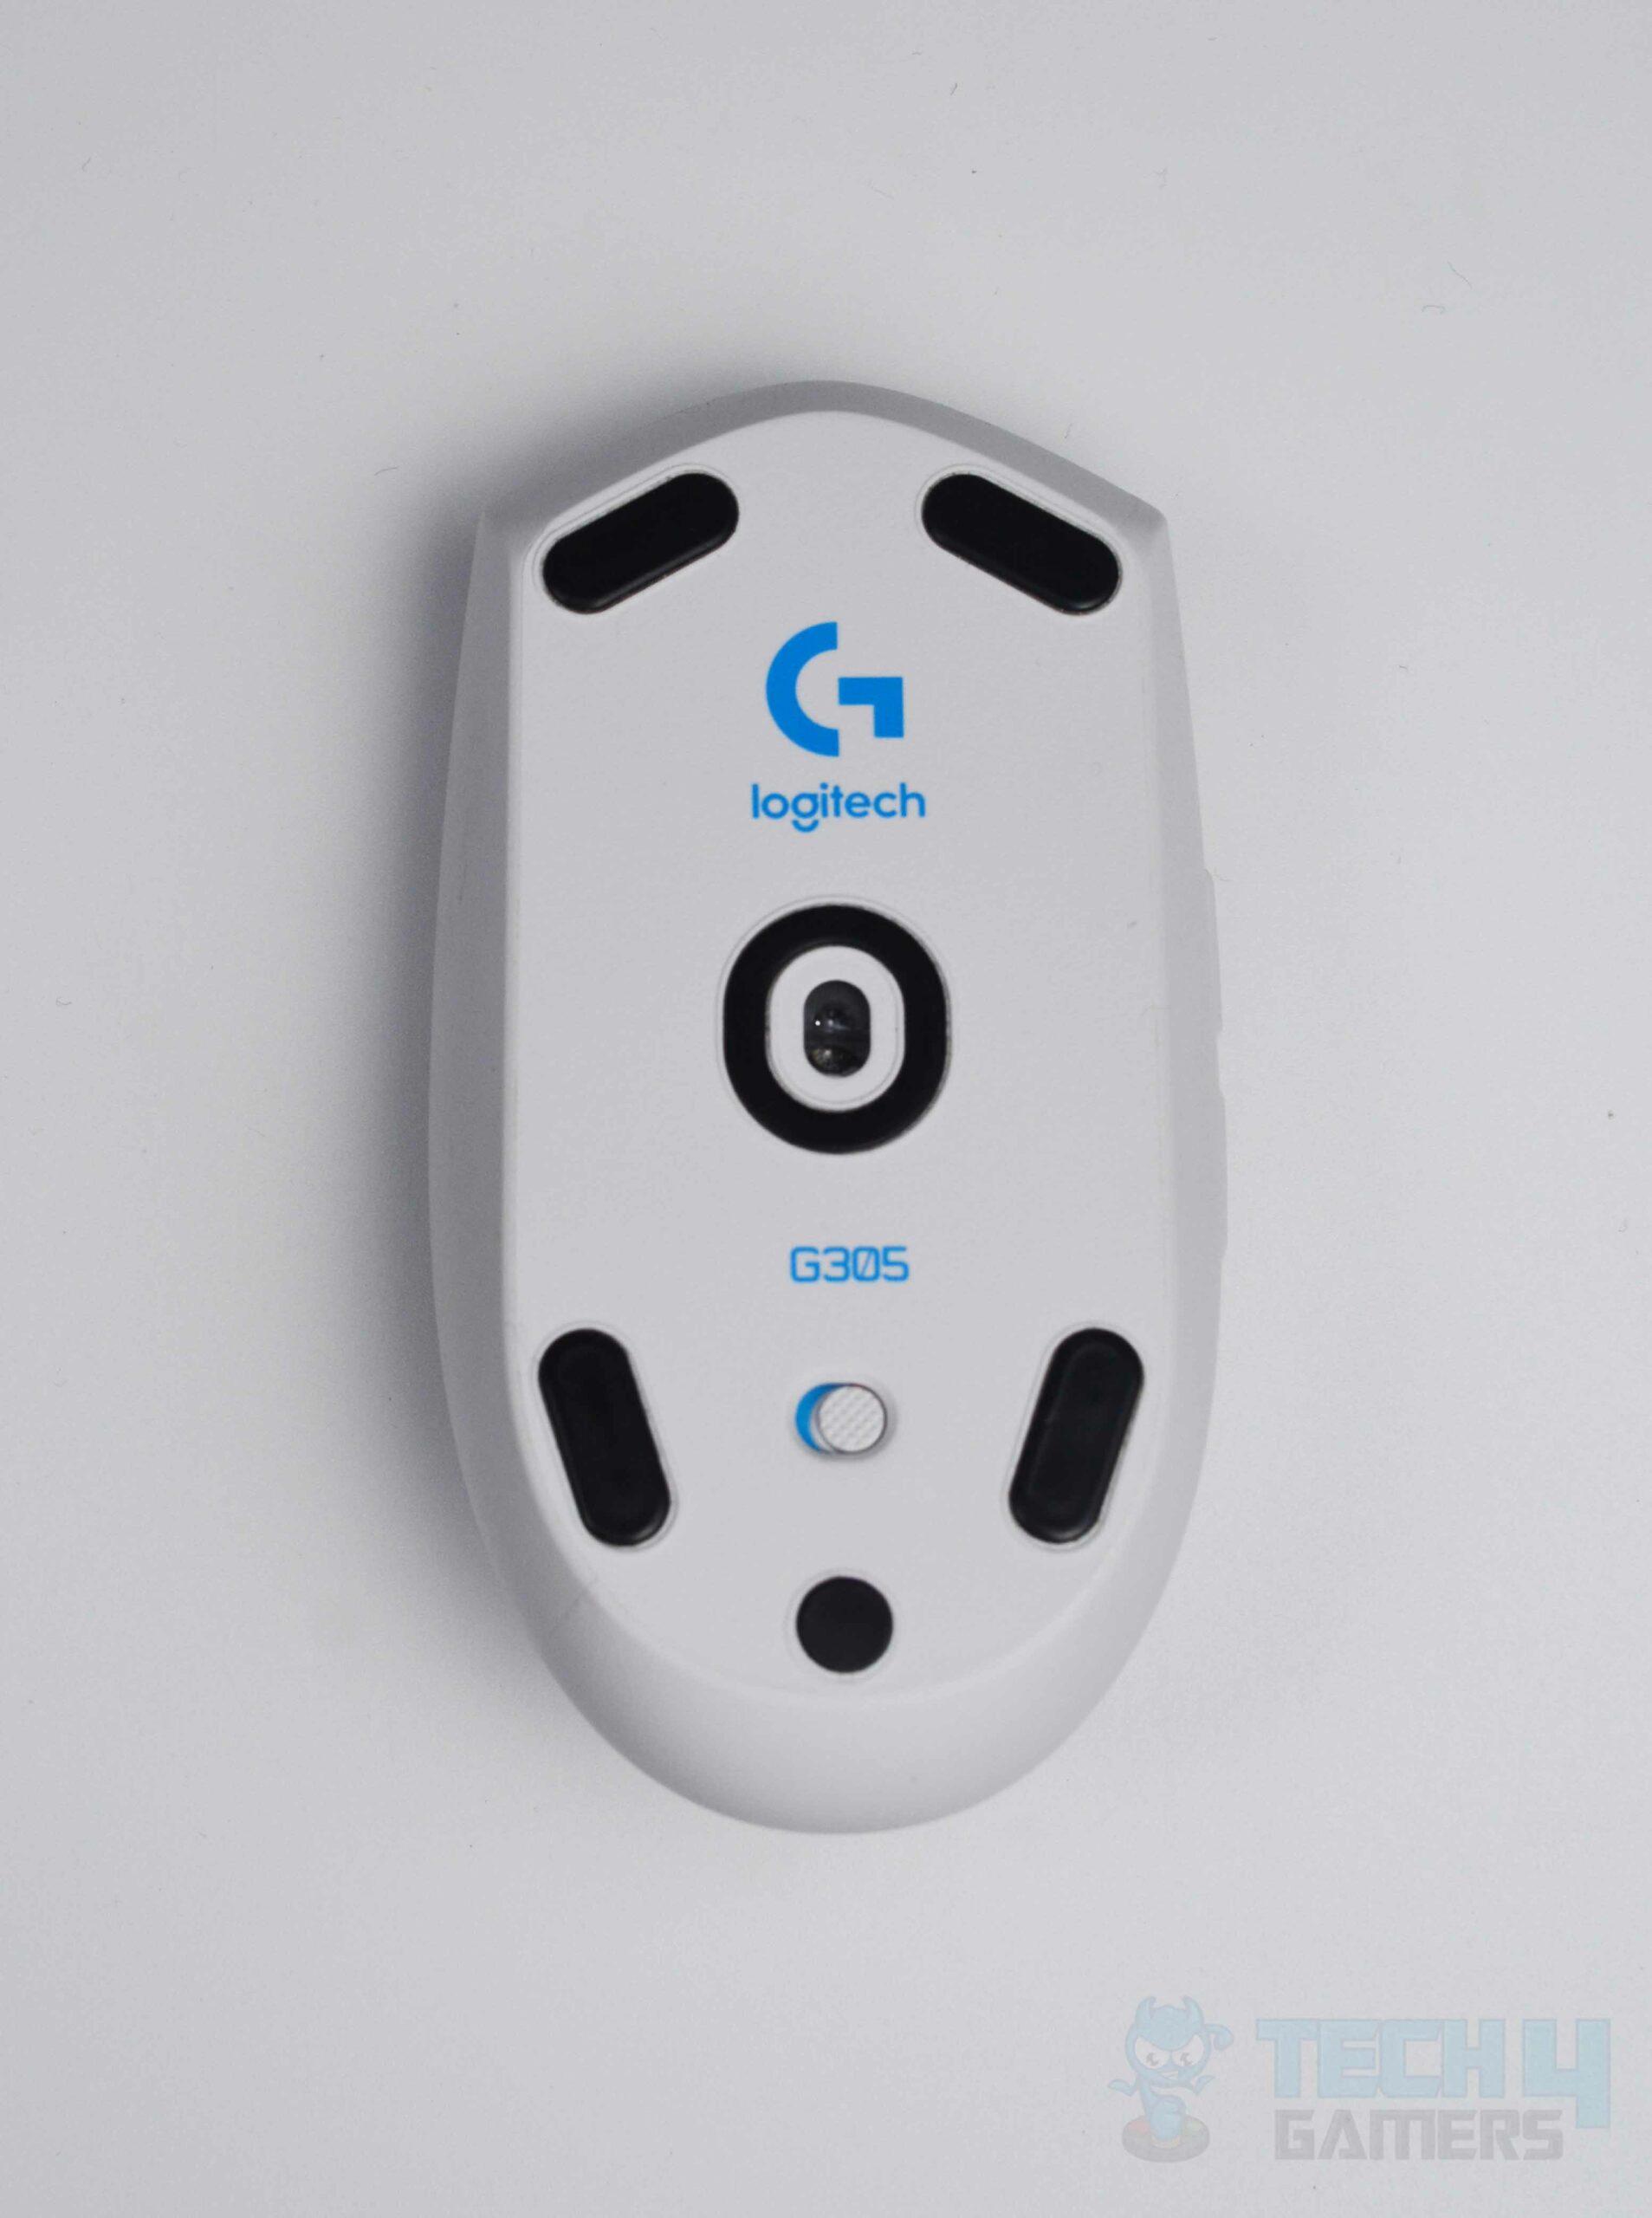 Logitech G305 Hero Sensor On the Back of the Mouse